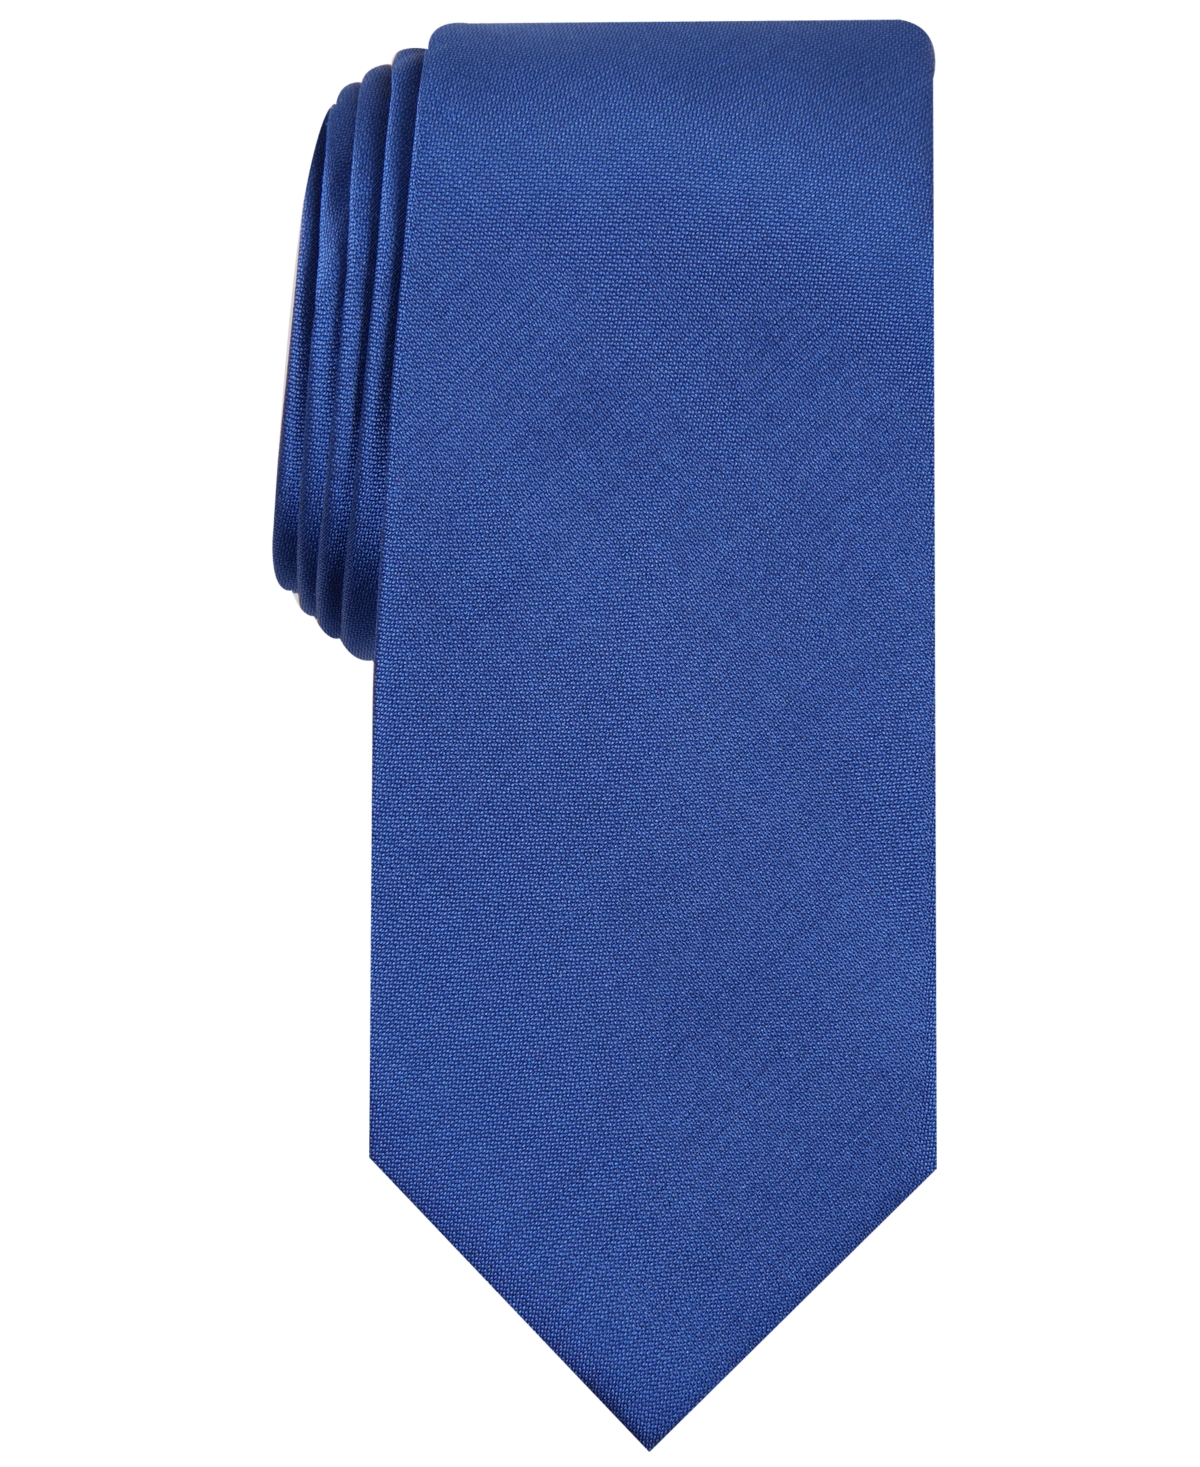 Men's Solid Texture Slim Tie, Created for Macy's - Cobalt